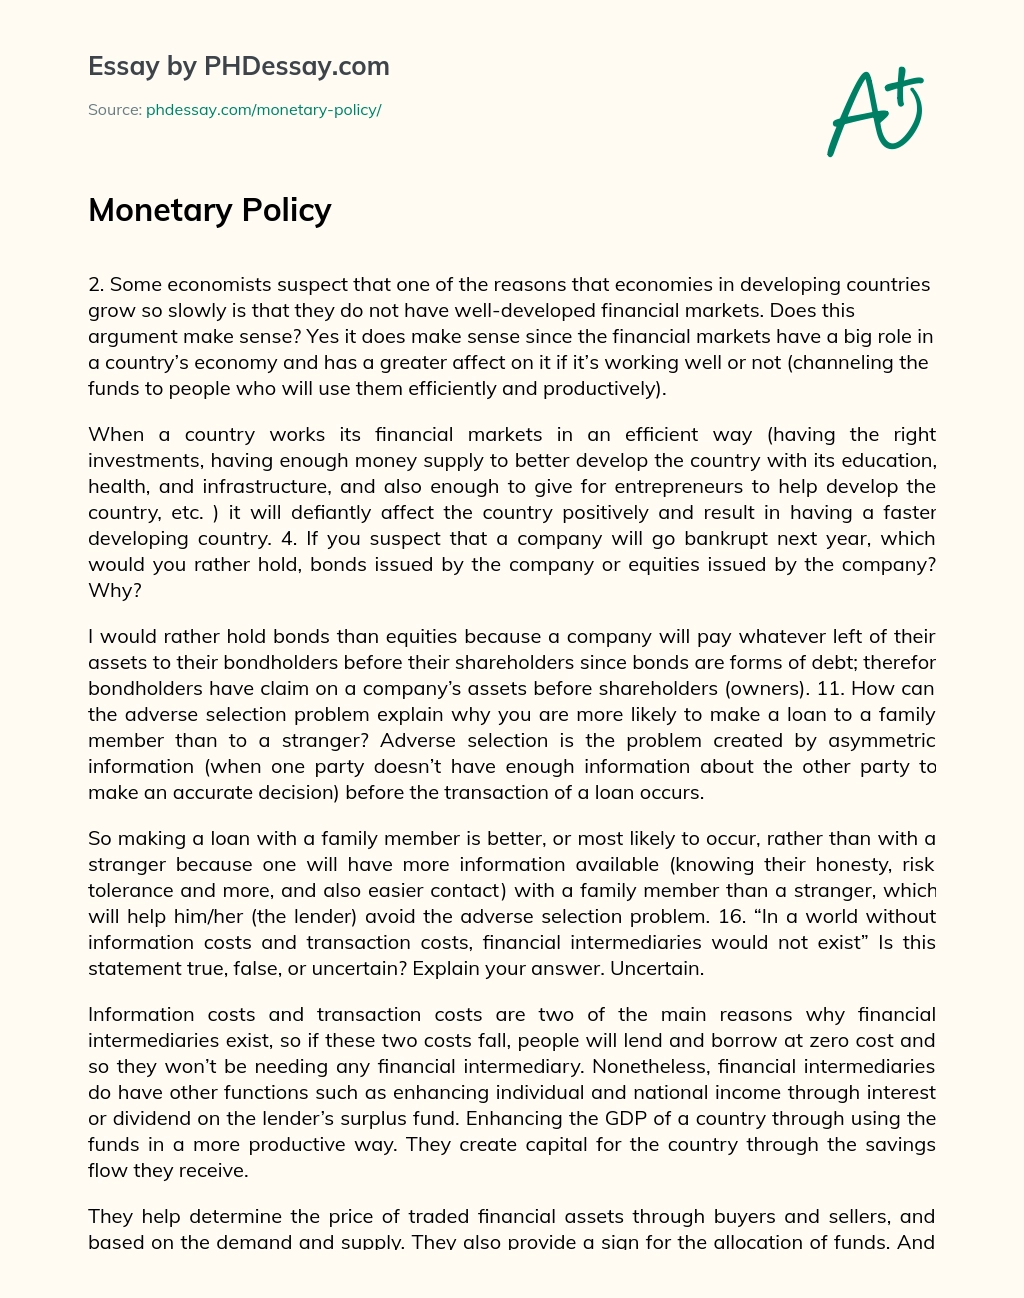 Monetary Policy essay